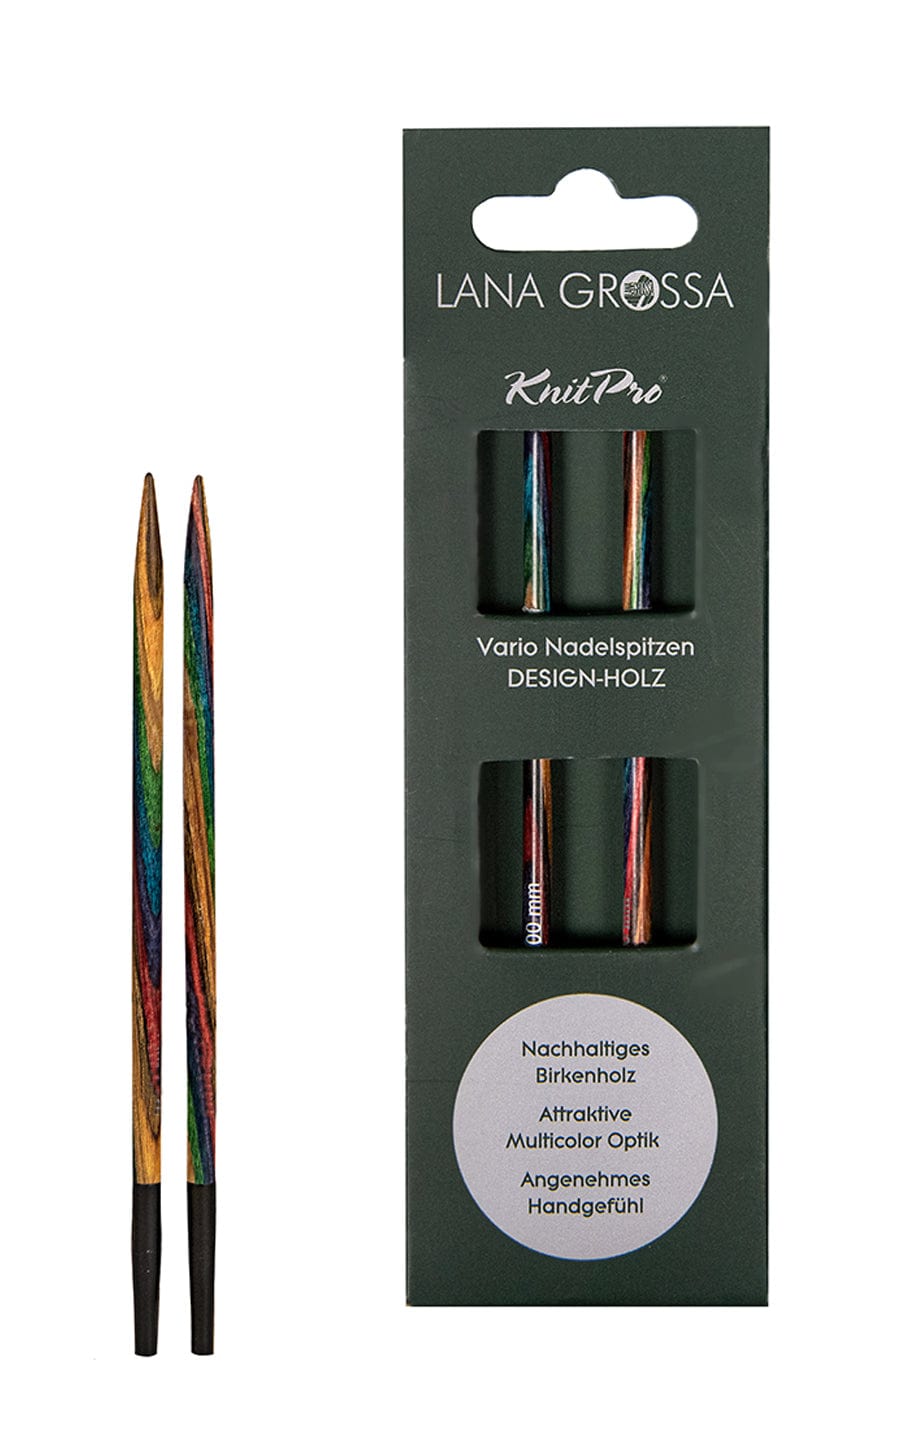 LANA GROSSA Nadeln Kurze 4,5 mm Nadelspitze Vario aus Holz - neue Verpackung